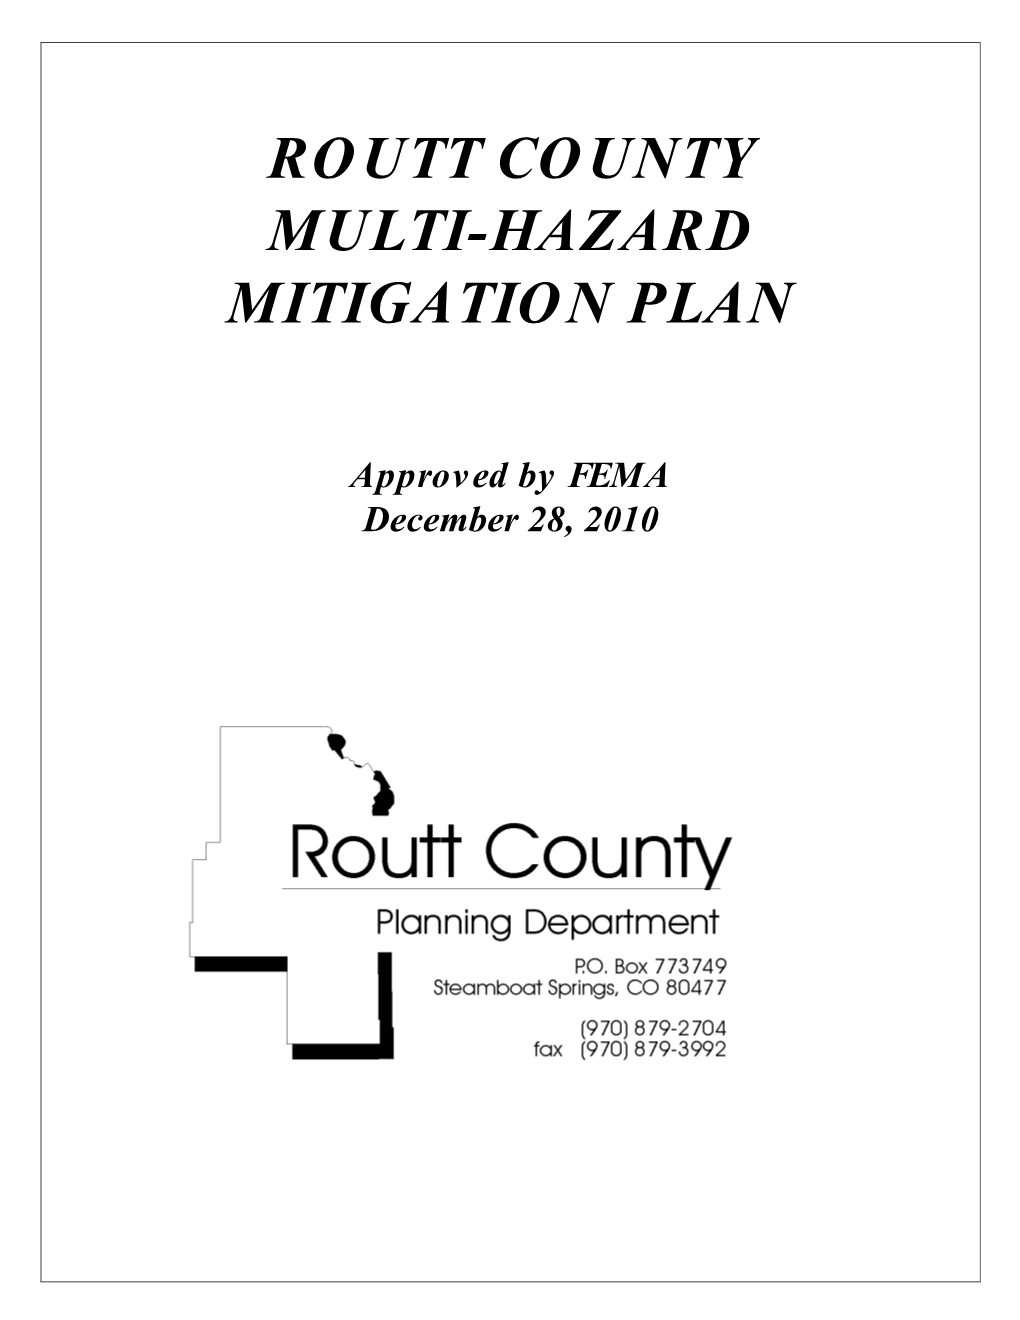 Routt County Multi-Hazard Mitigation Plan